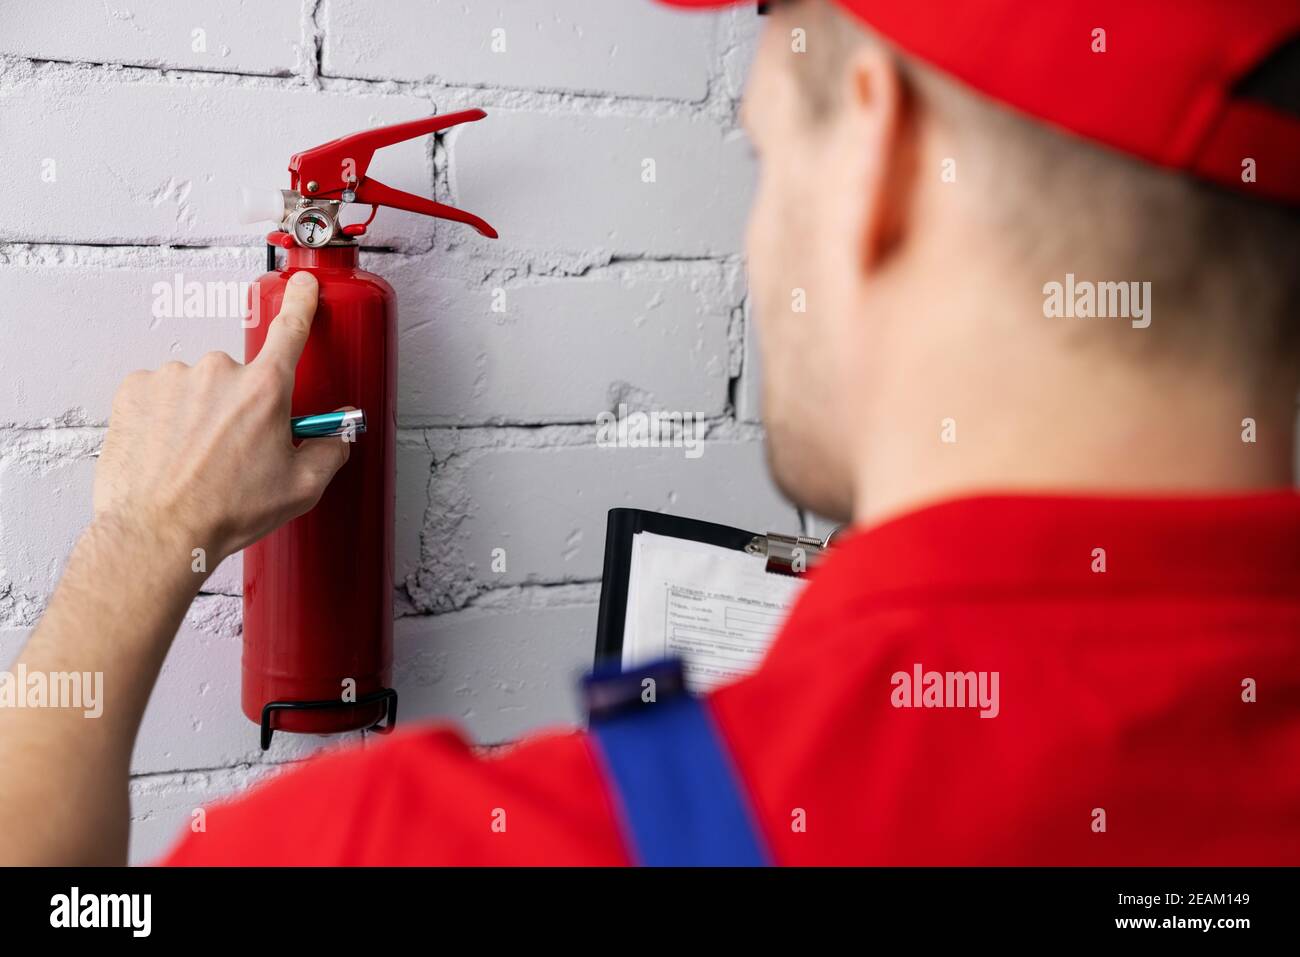 prevenzione e sicurezza antincendio - addetto alla manutenzione che controlla la pressione dell'estintore Foto Stock